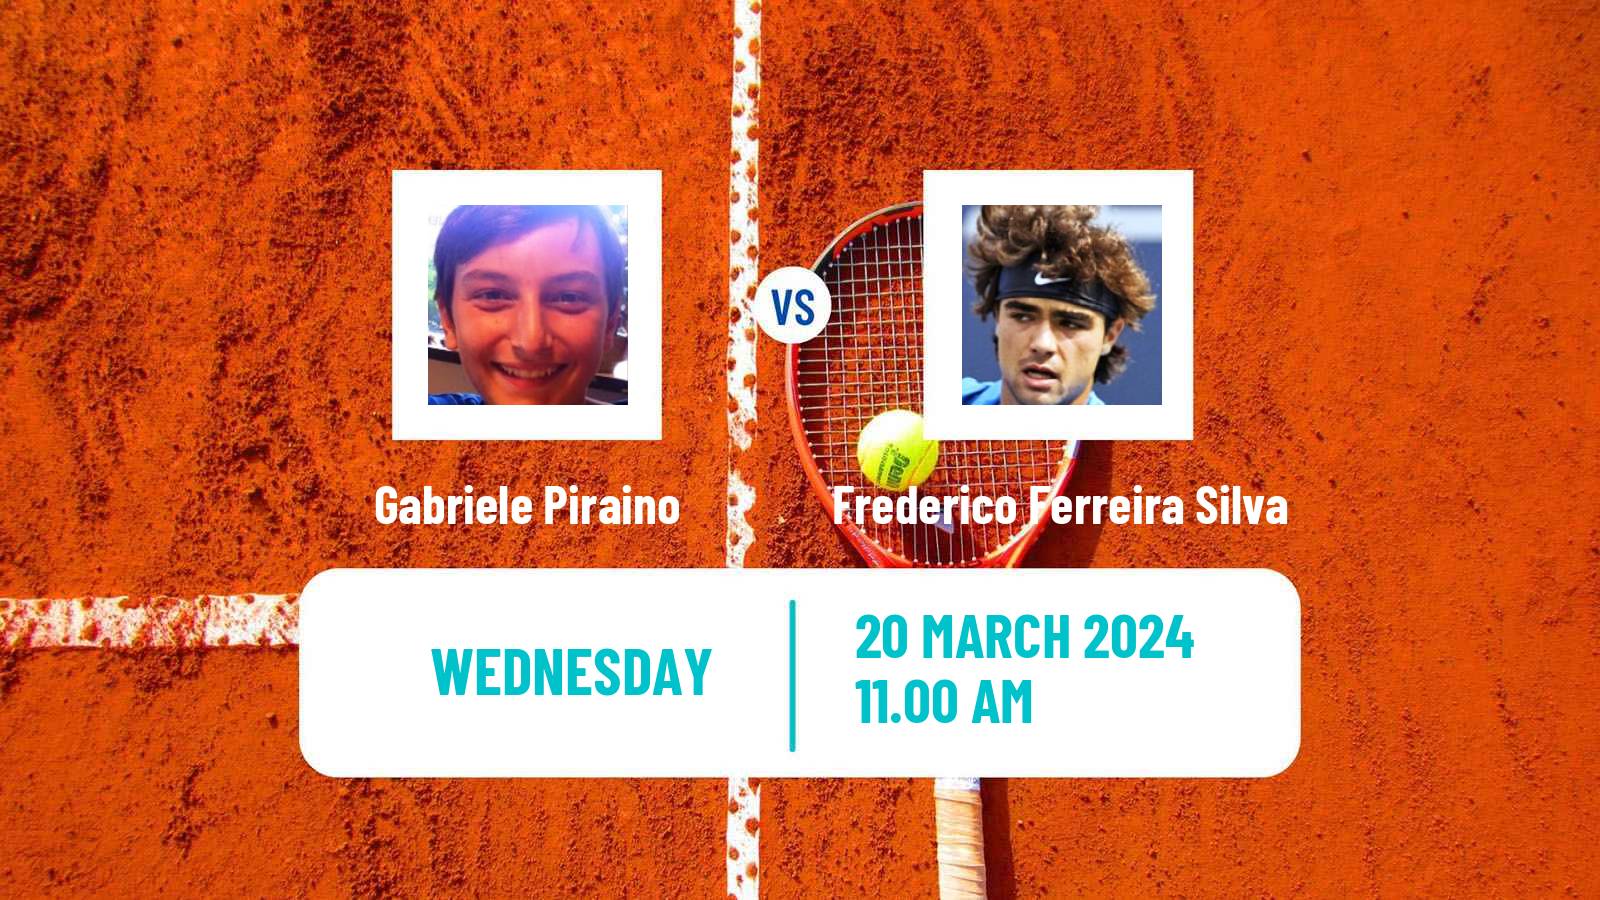 Tennis ITF M25 Loule Men Gabriele Piraino - Frederico Ferreira Silva